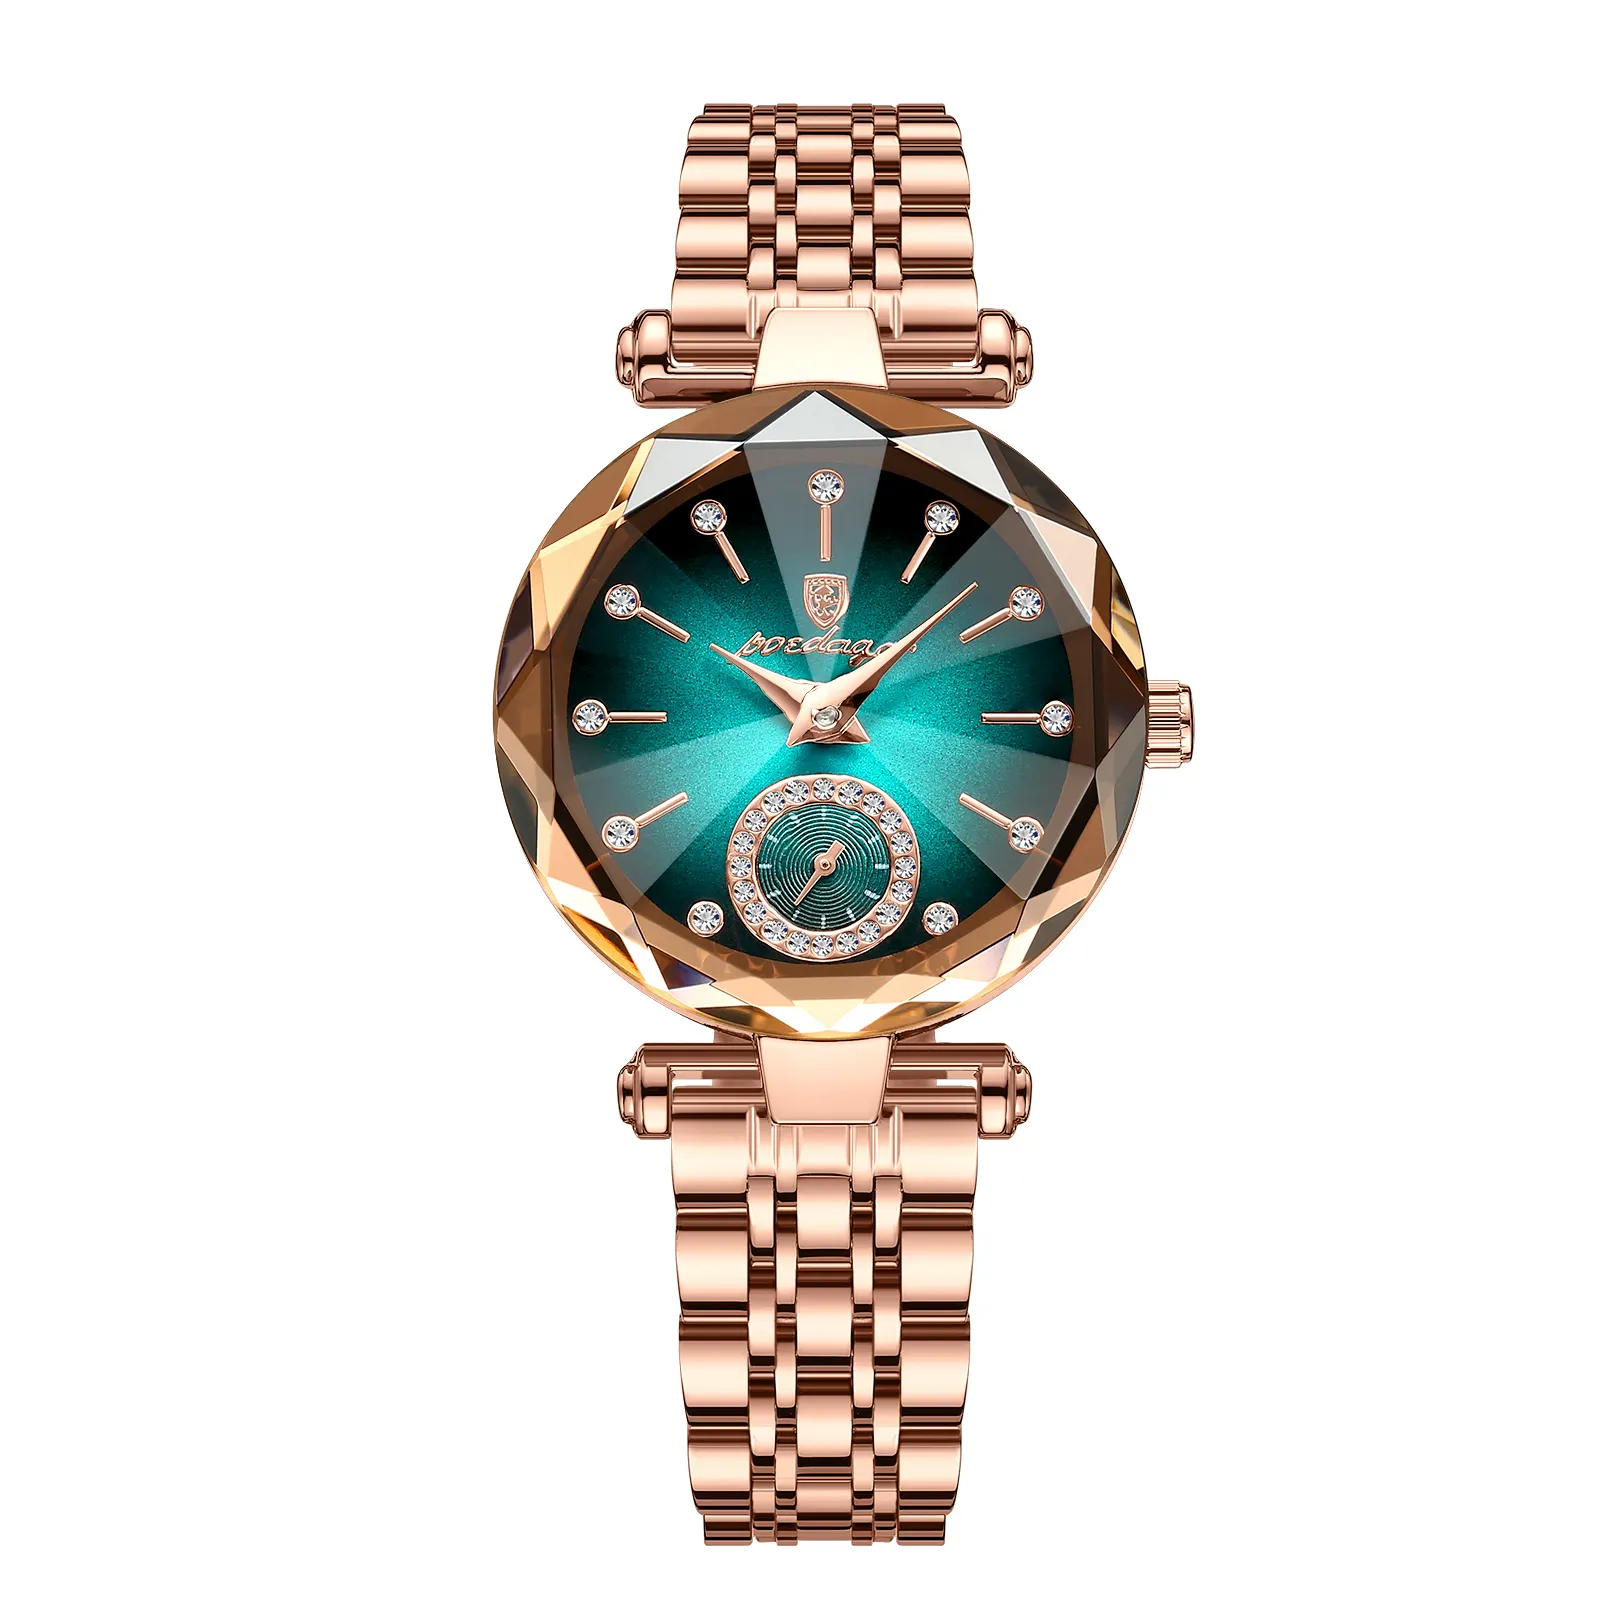 POEDAGAR Watch for Women 719 Luxury Jewelry Design Rose Gold Steel Quartz Wristwatches Waterproof Fashion Top Brand Ladies Watch